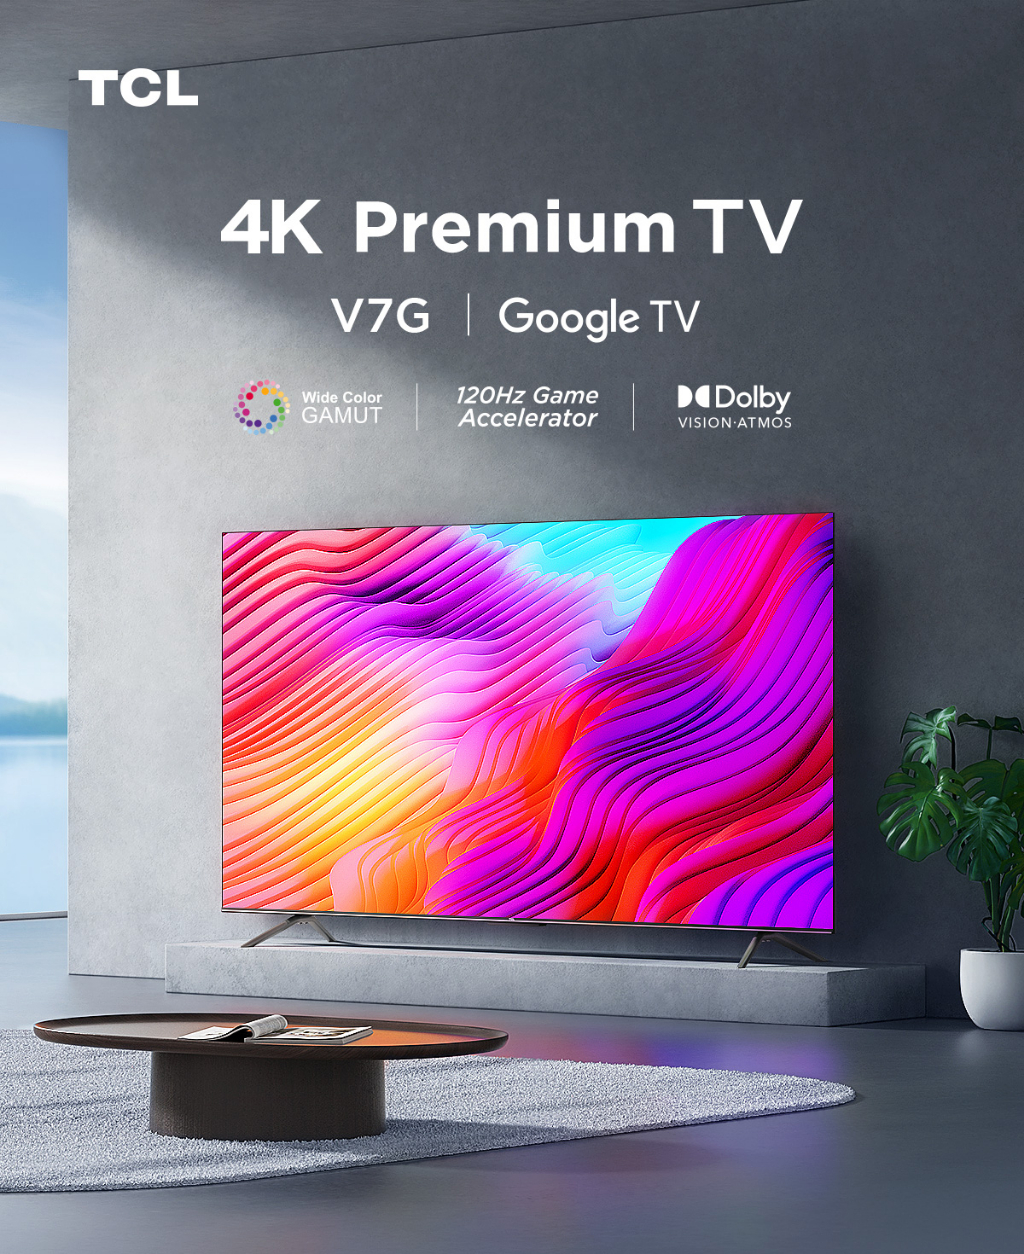 ข้อมูลเพิ่มเติมของ ใหม่ TCL ทีวี 55 นิ้ว 4K Premium Google TV รุ่น 55V7G ระบบปฏิบัติการ Google/Netflix & Youtube & MEMC 60HZ-Wifi, WCG, Freesync, Dolby Vision & Atmos